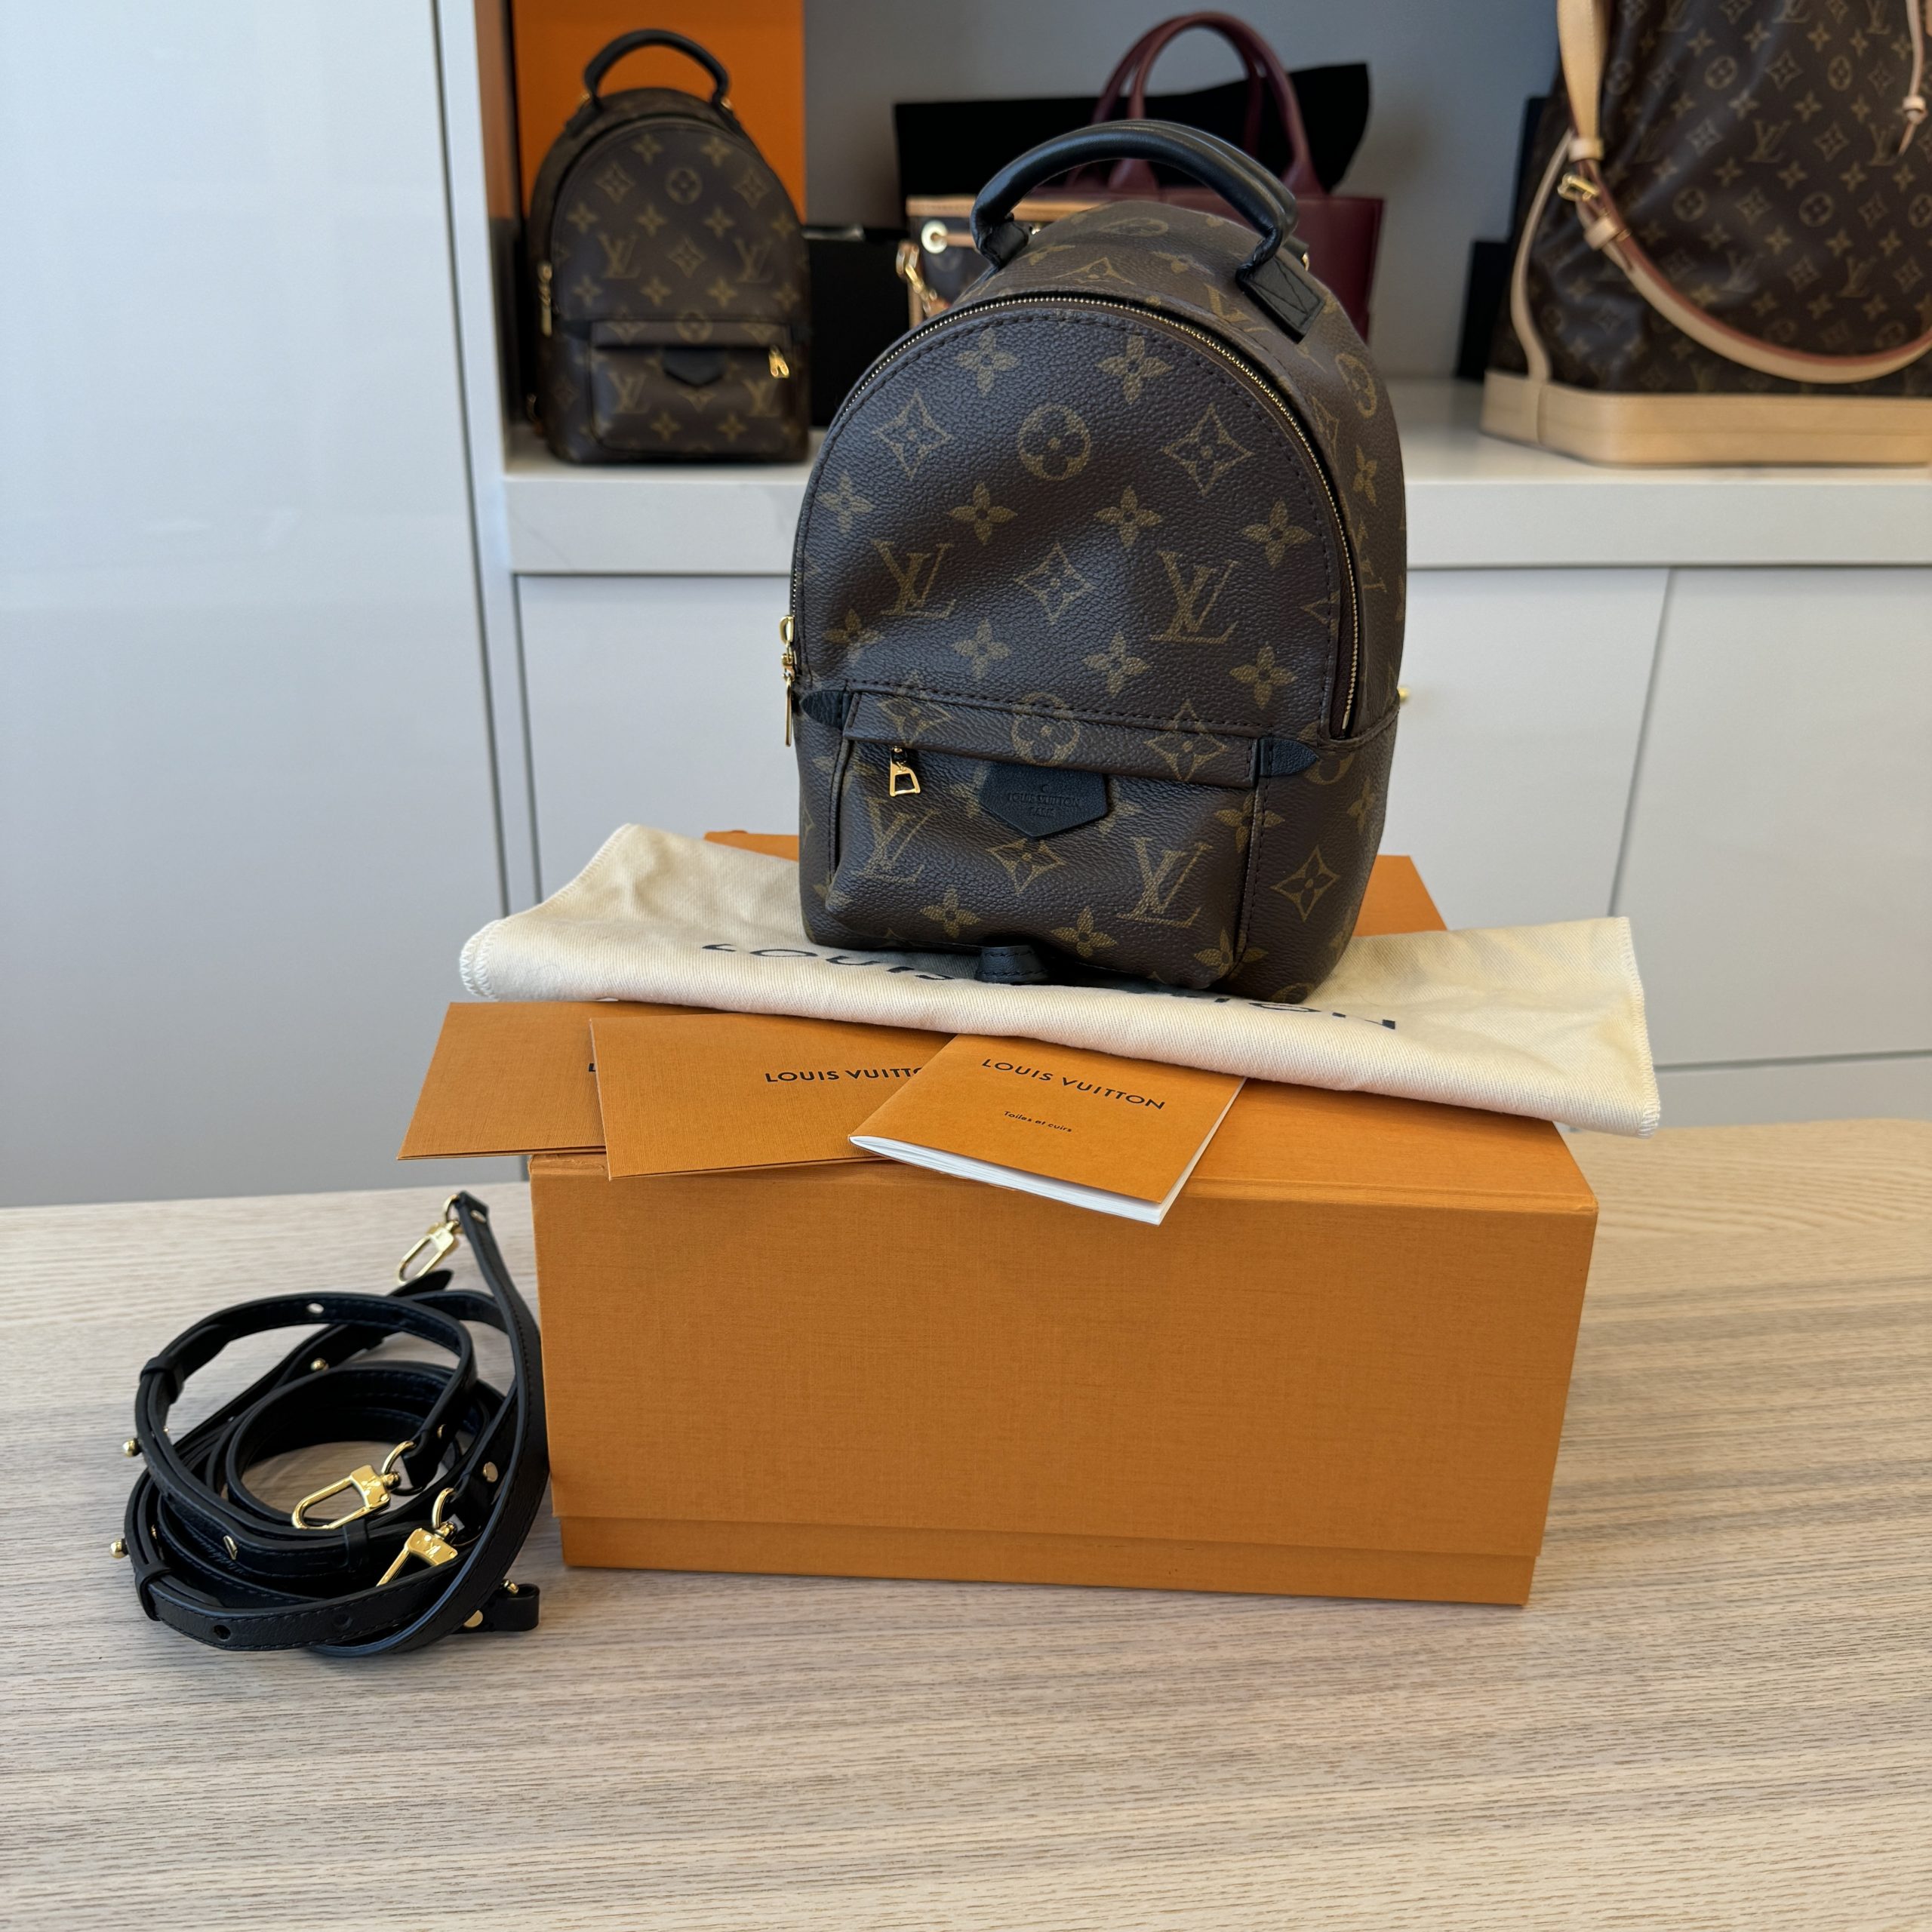 Shop Now on RingenShops - Louis Vuitton Pre - Owned Bags for Women - Louis  Vuitton Heartbreaker